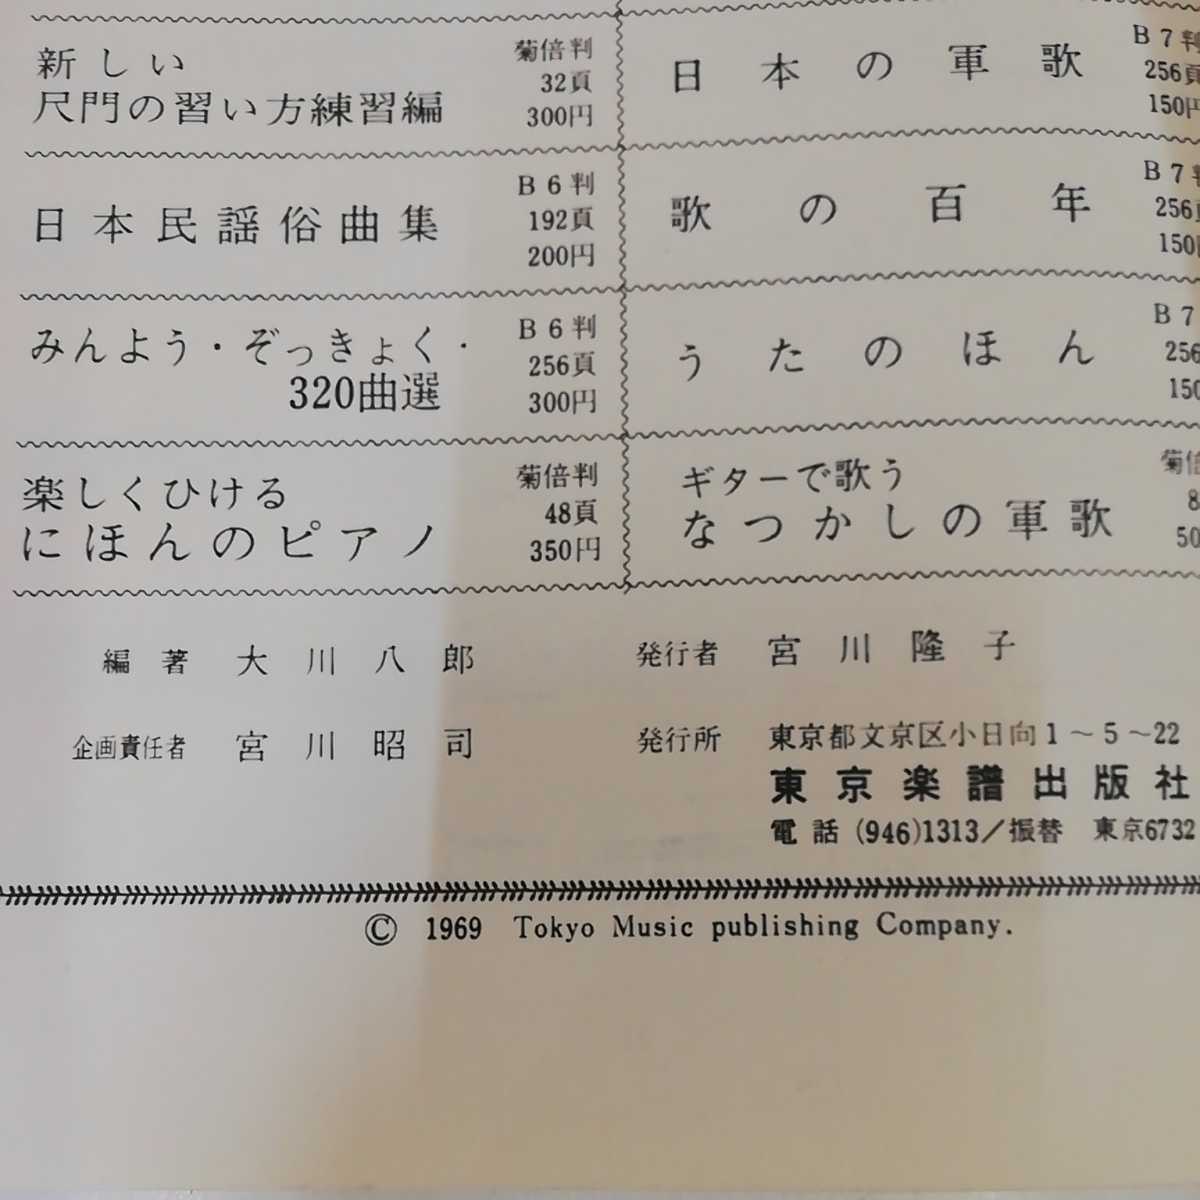 1_▼ 新しい尺八の習い方 上 入門編 東京楽譜出版 1969年 昭和44年 楽譜 尺八の画像5